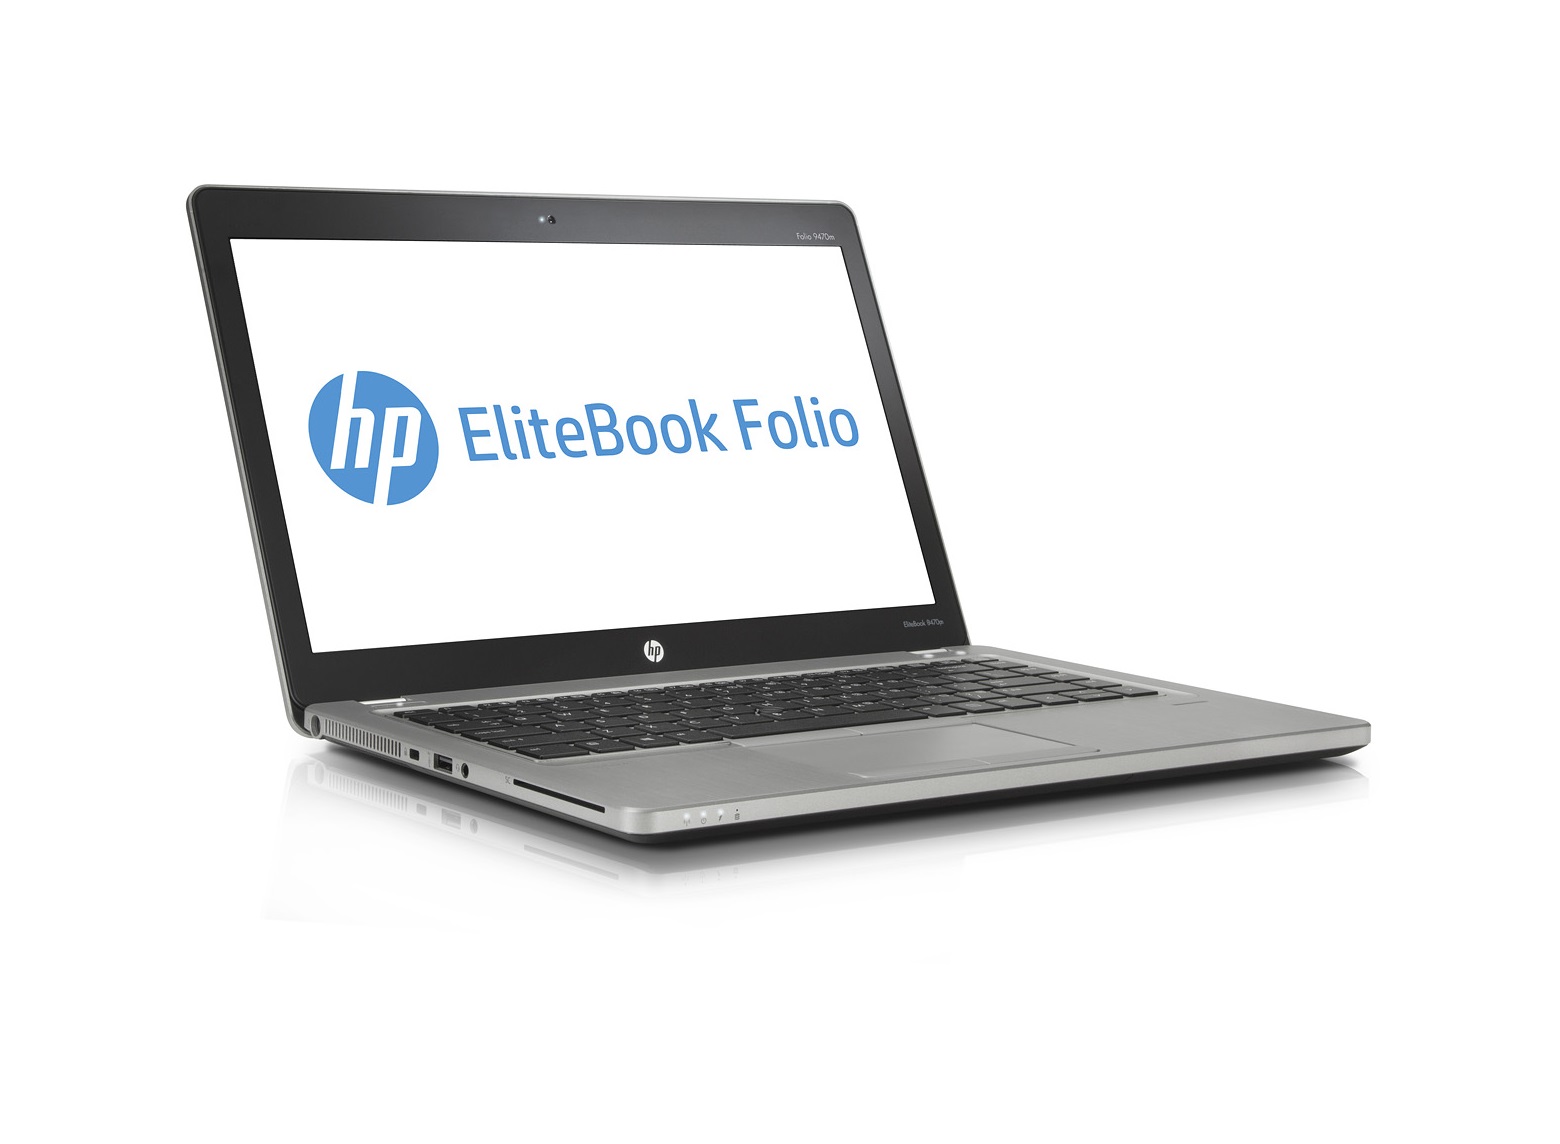 HP EliteBook Folio 9470m 3G